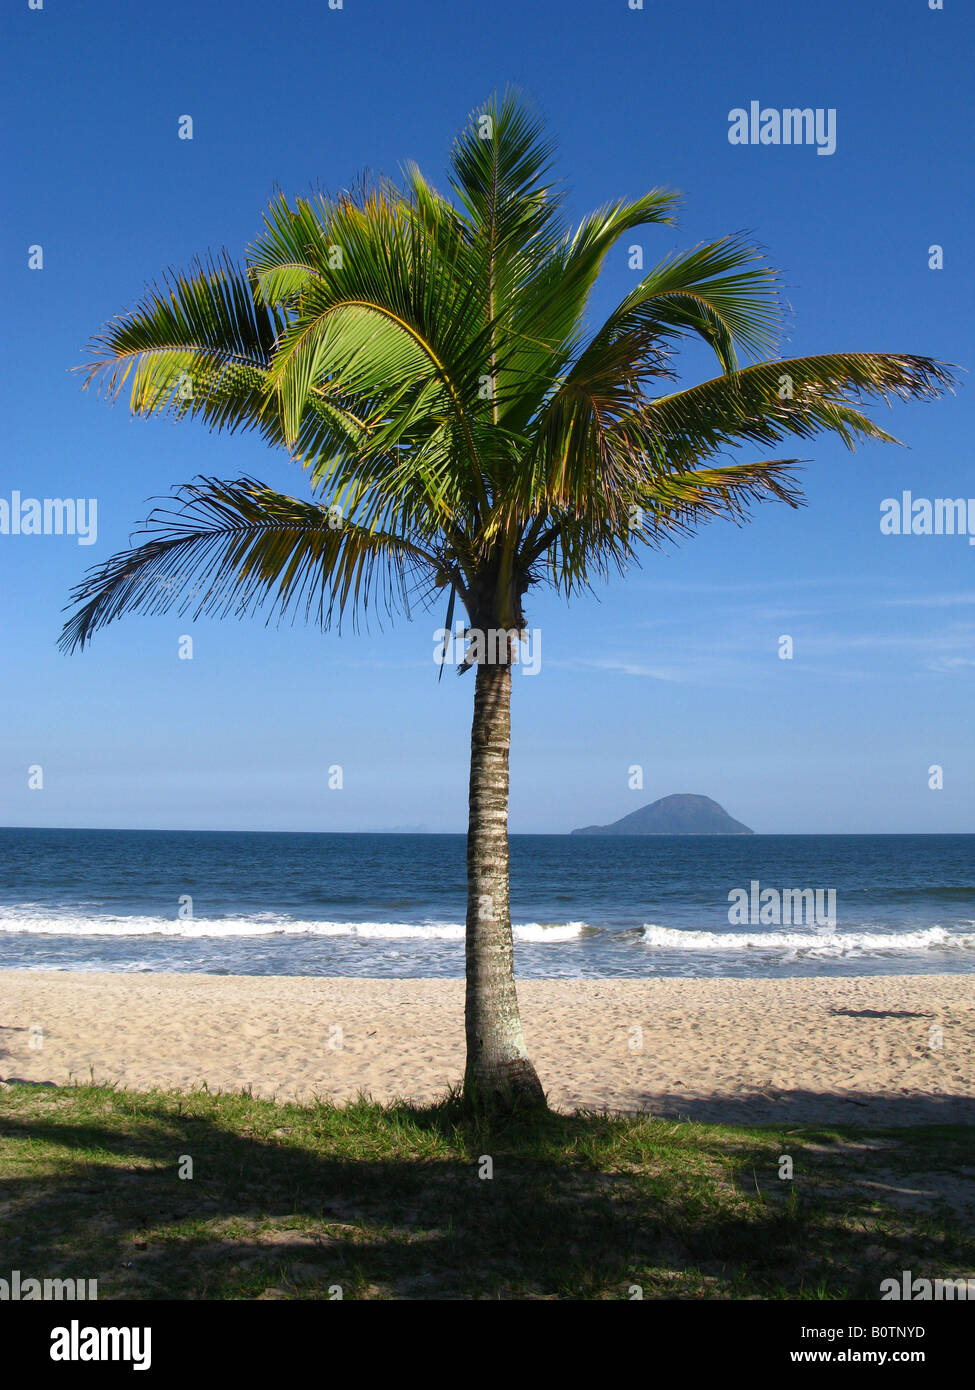 Palmier au Jureia Beach sur la côte nord de l'Etat de São Paulo Brésil 04 11 08 Banque D'Images